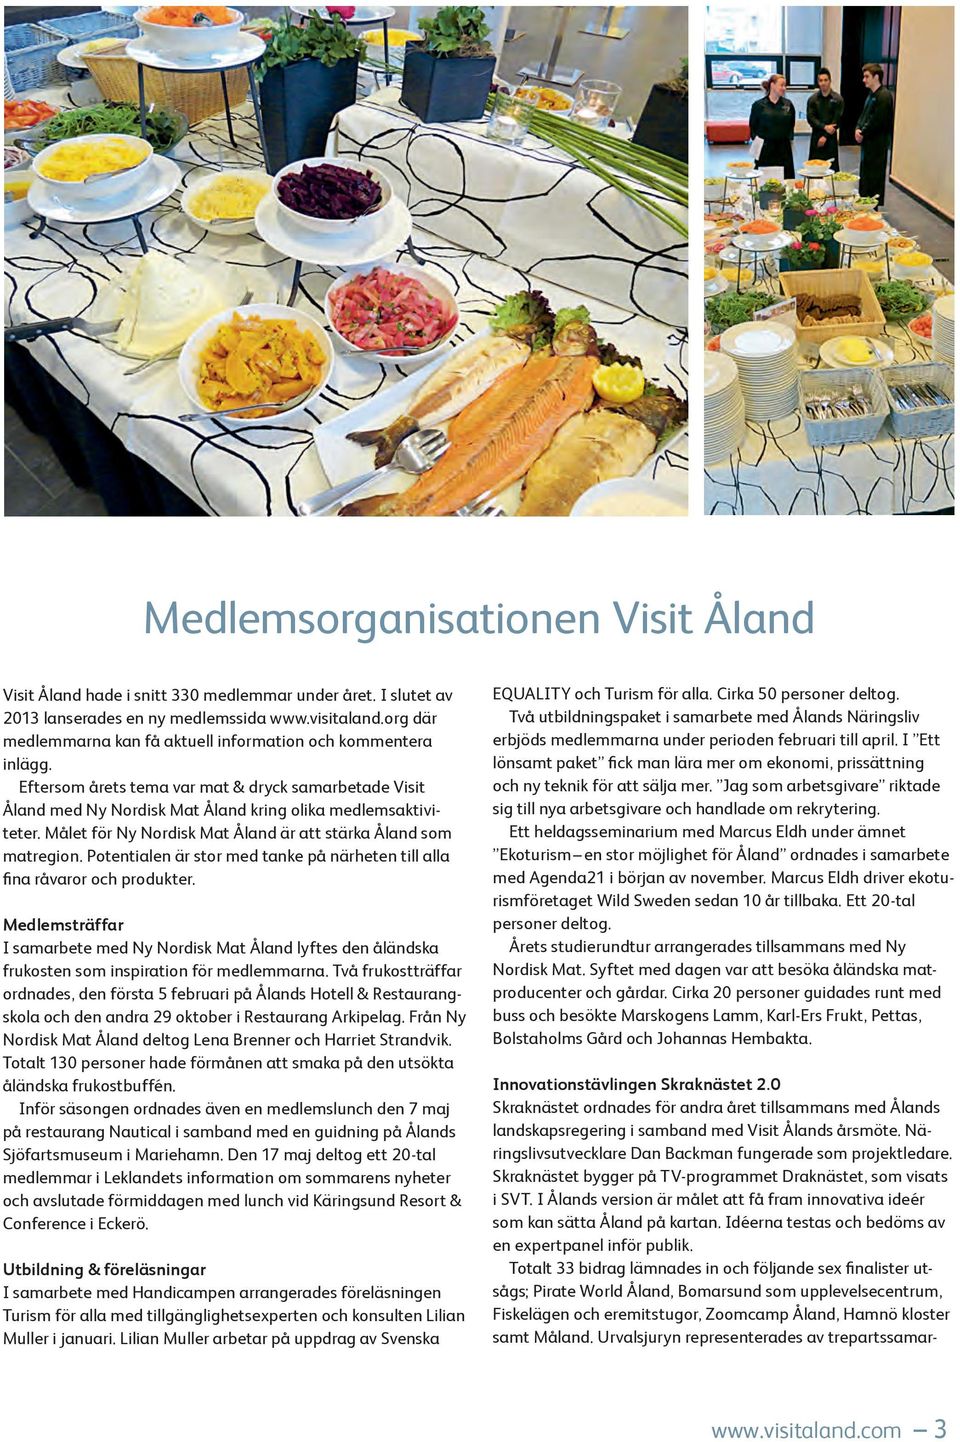 Målet för Ny Nordisk Mat Åland är att stärka Åland som matregion. Potentialen är stor med tanke på närheten till alla fina råvaror och produkter.